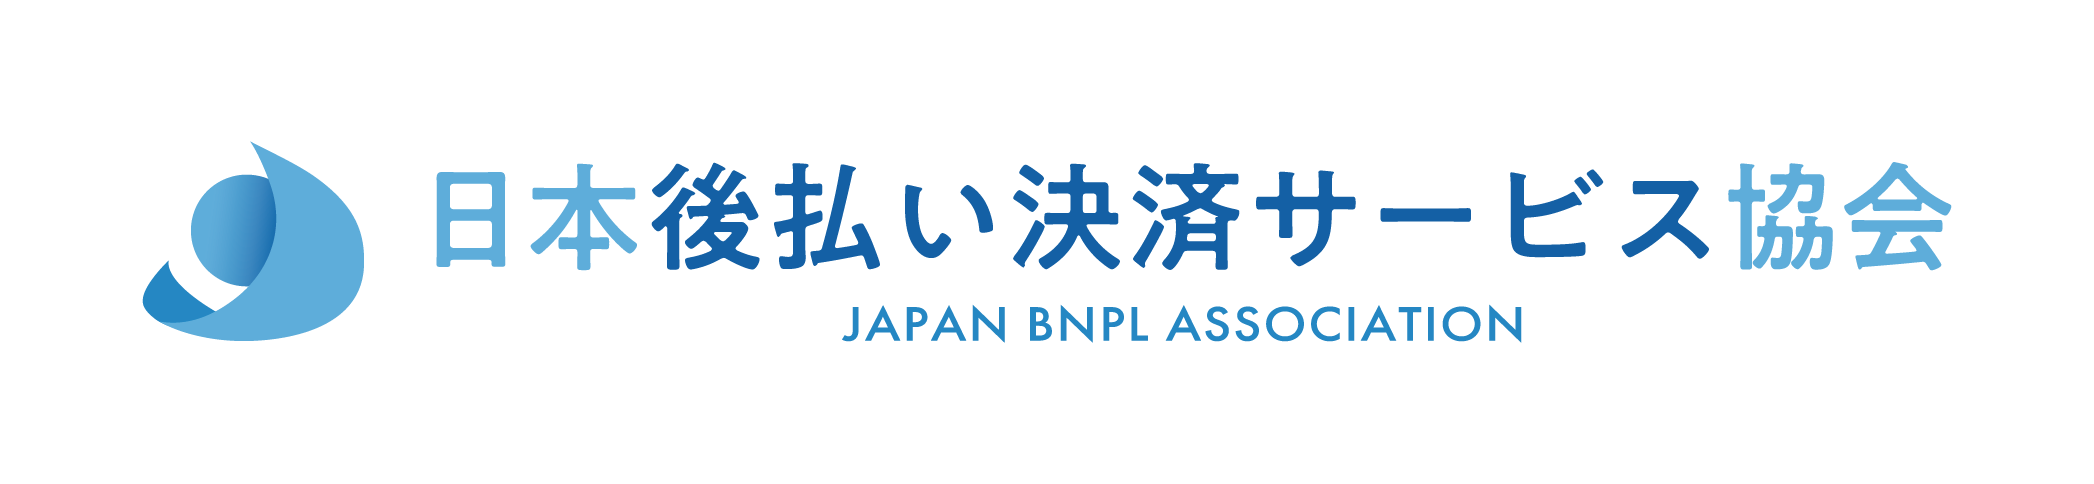 日本後払い決済サービス協会ロゴ